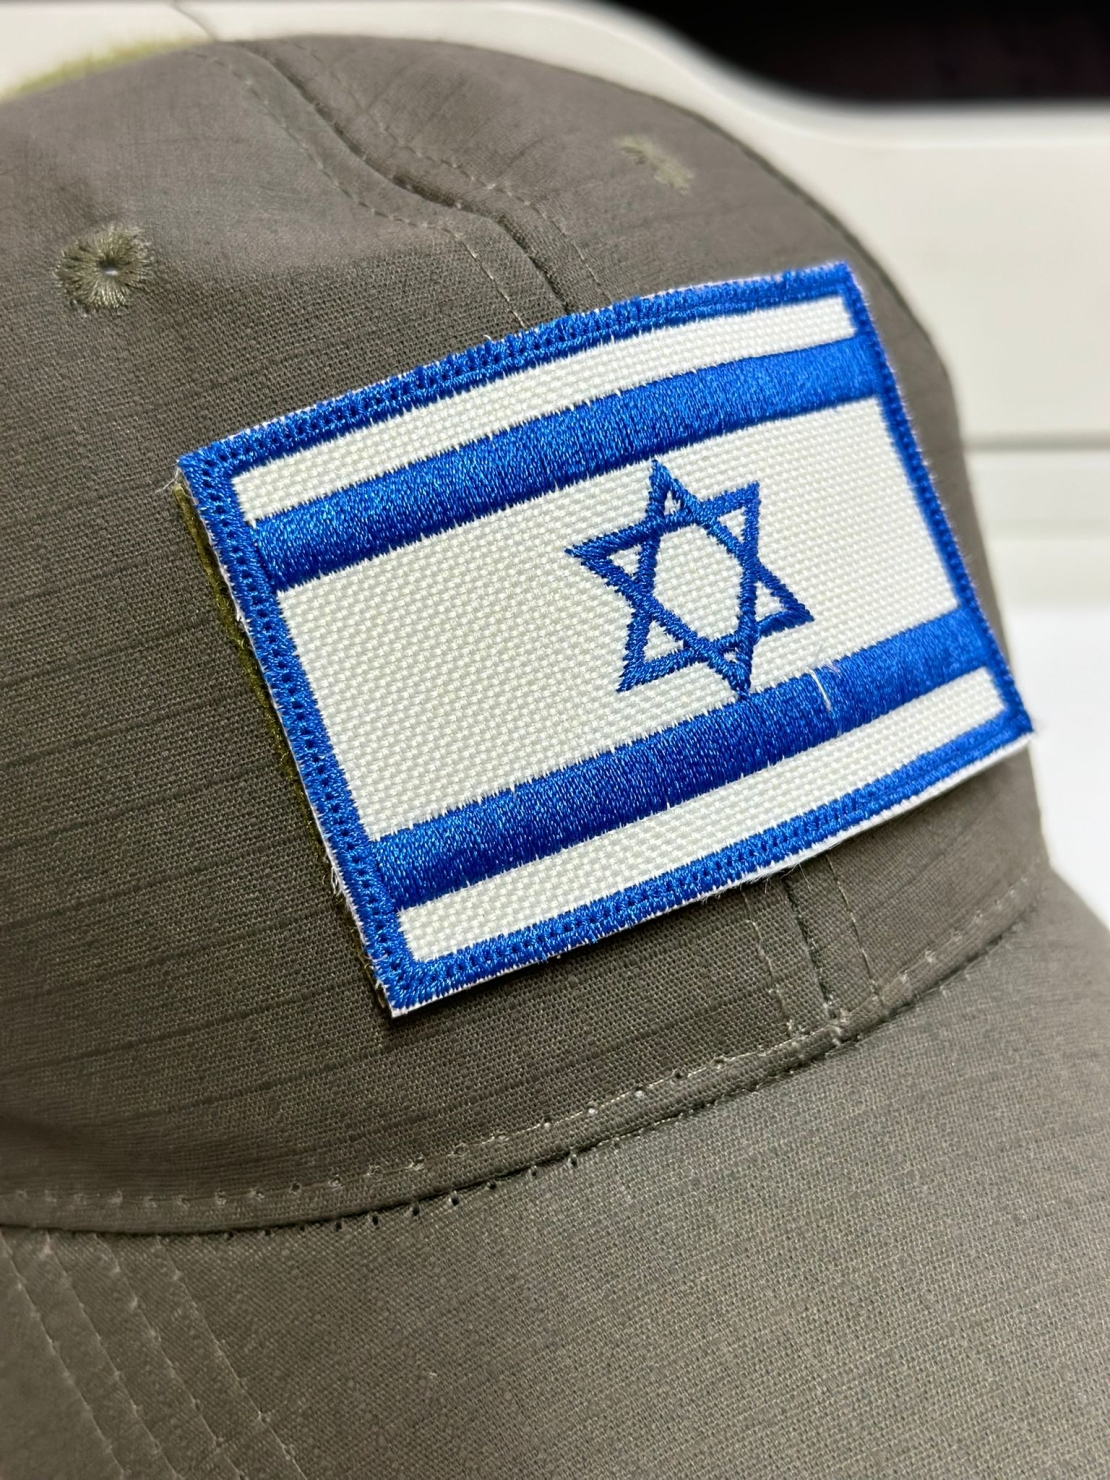 פאצ' דגל ישראל - כחול לבן